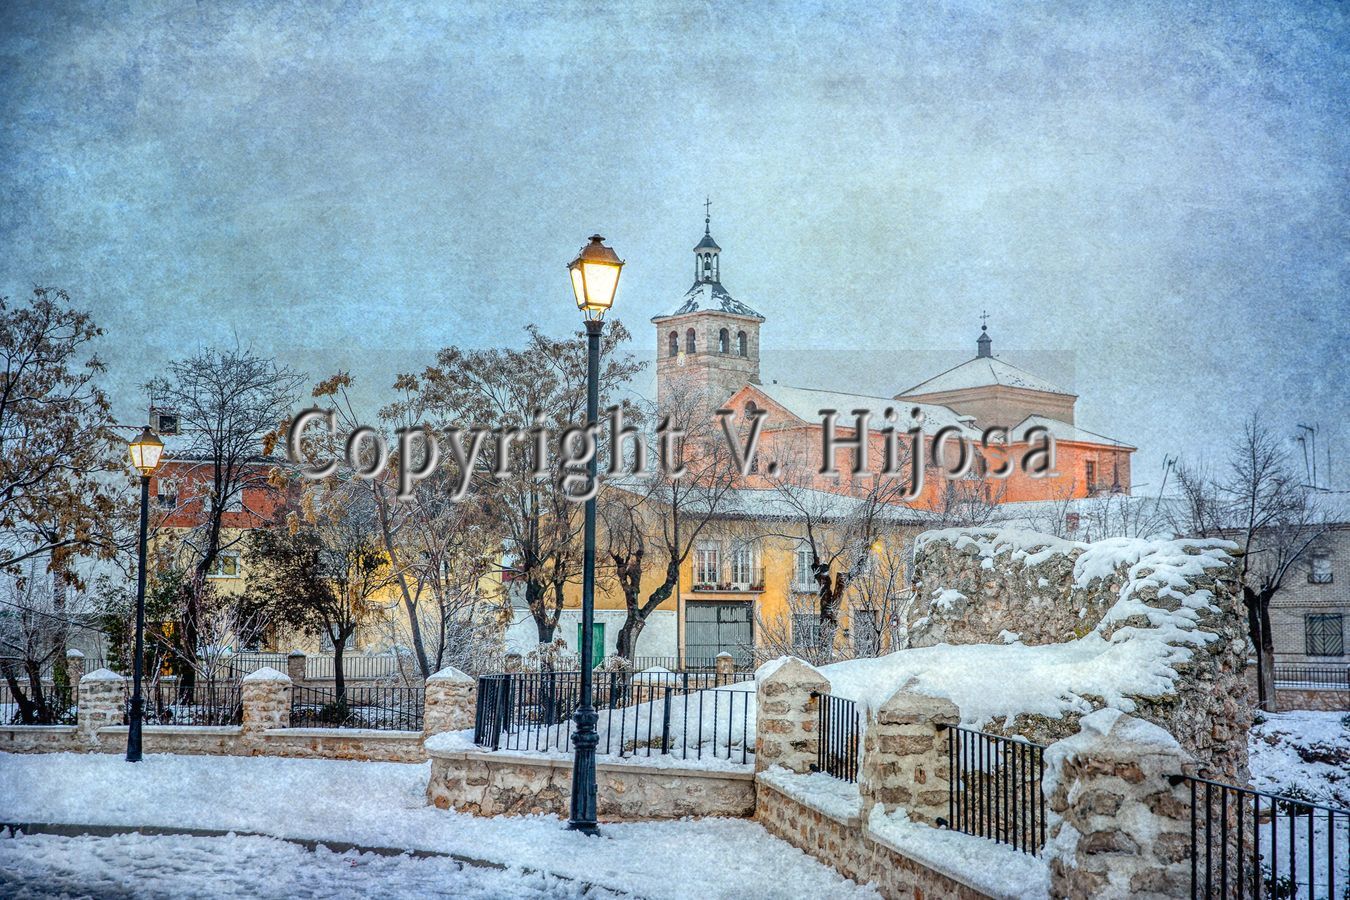 La Guardia desde muralla, nevada